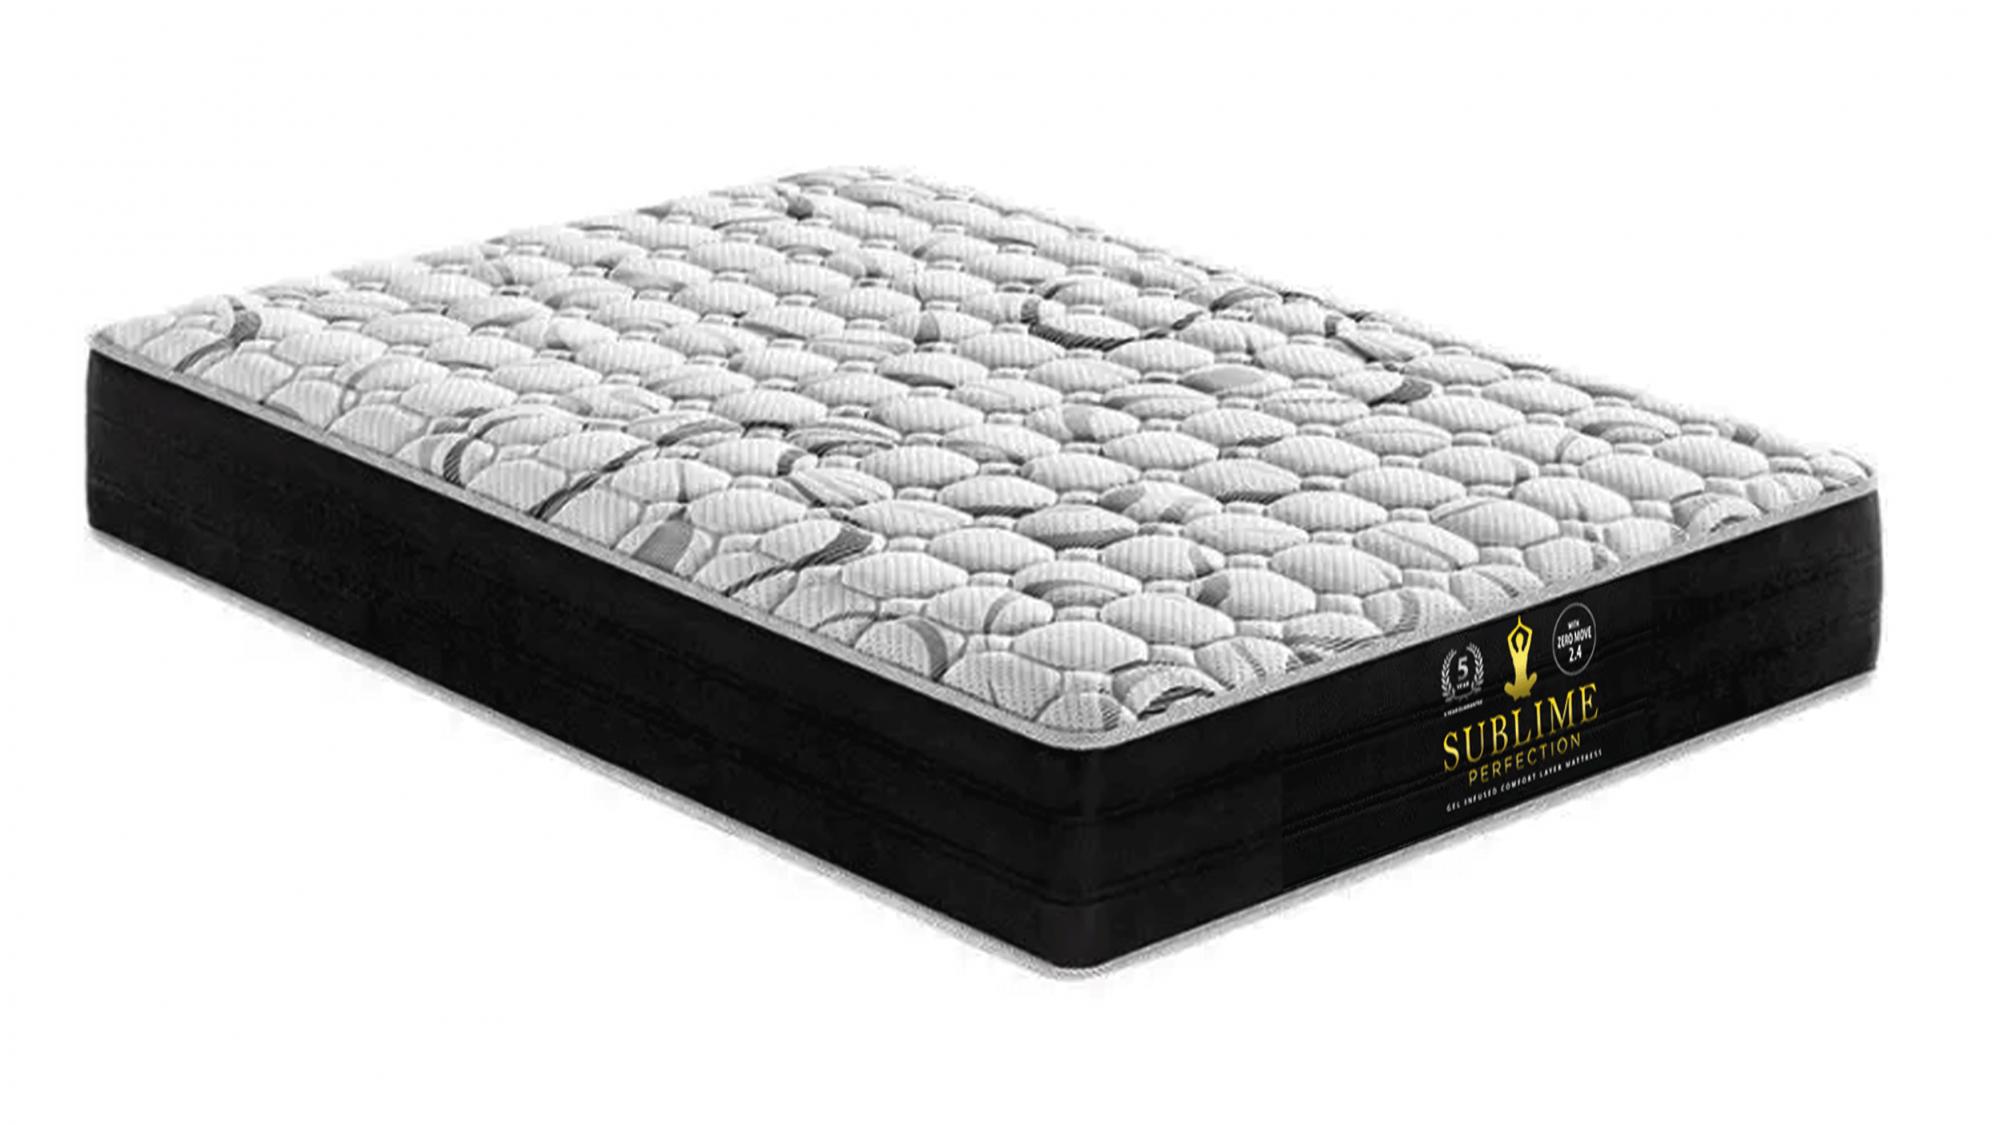 is a firm mattress good for aching bones